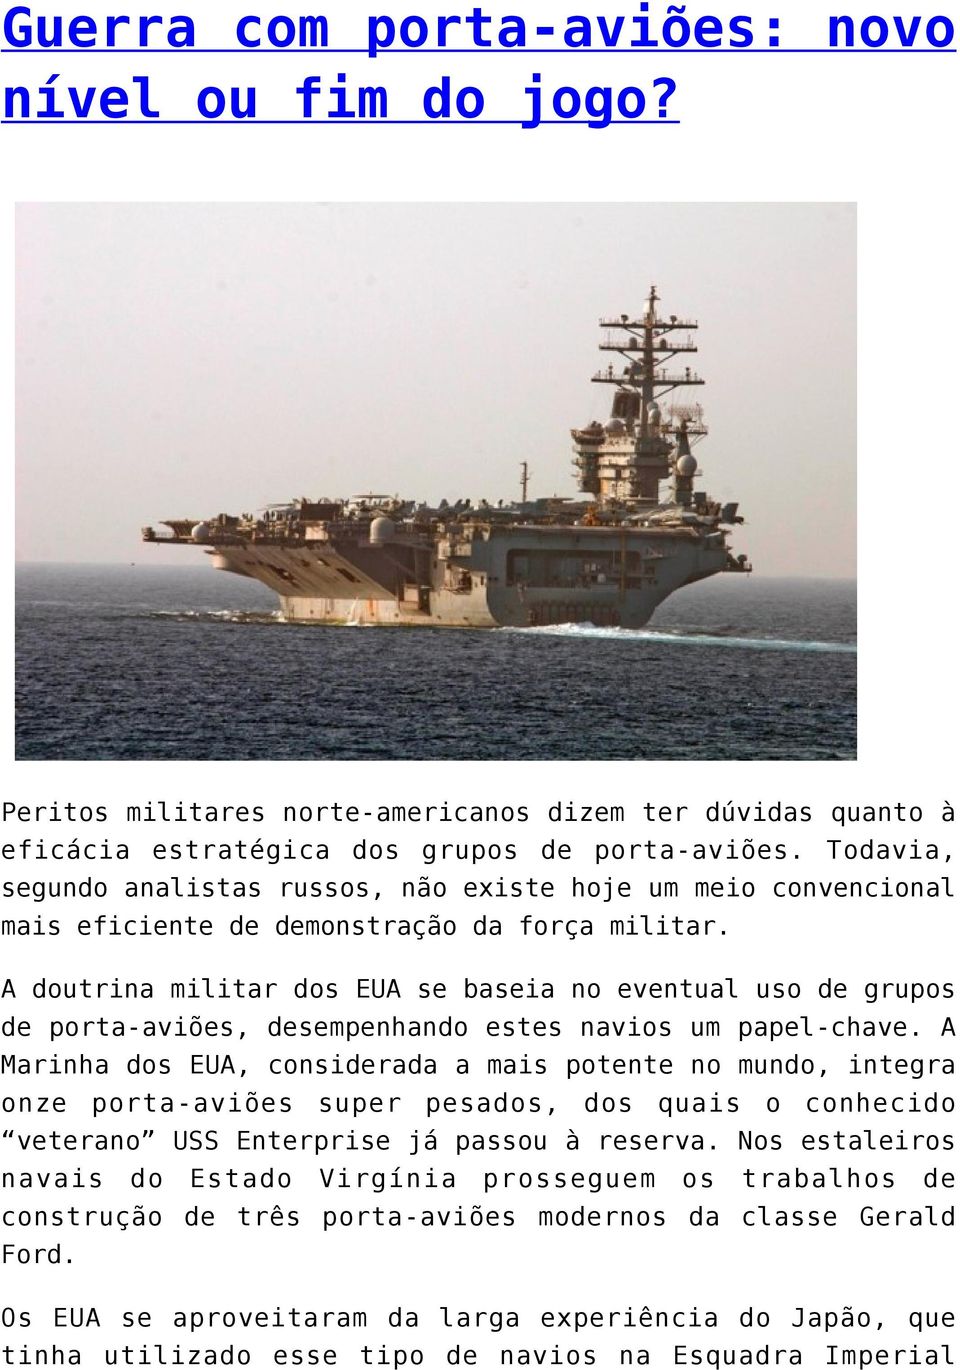 A doutrina militar dos EUA se baseia no eventual uso de grupos de porta-aviões, desempenhando estes navios um papel-chave.